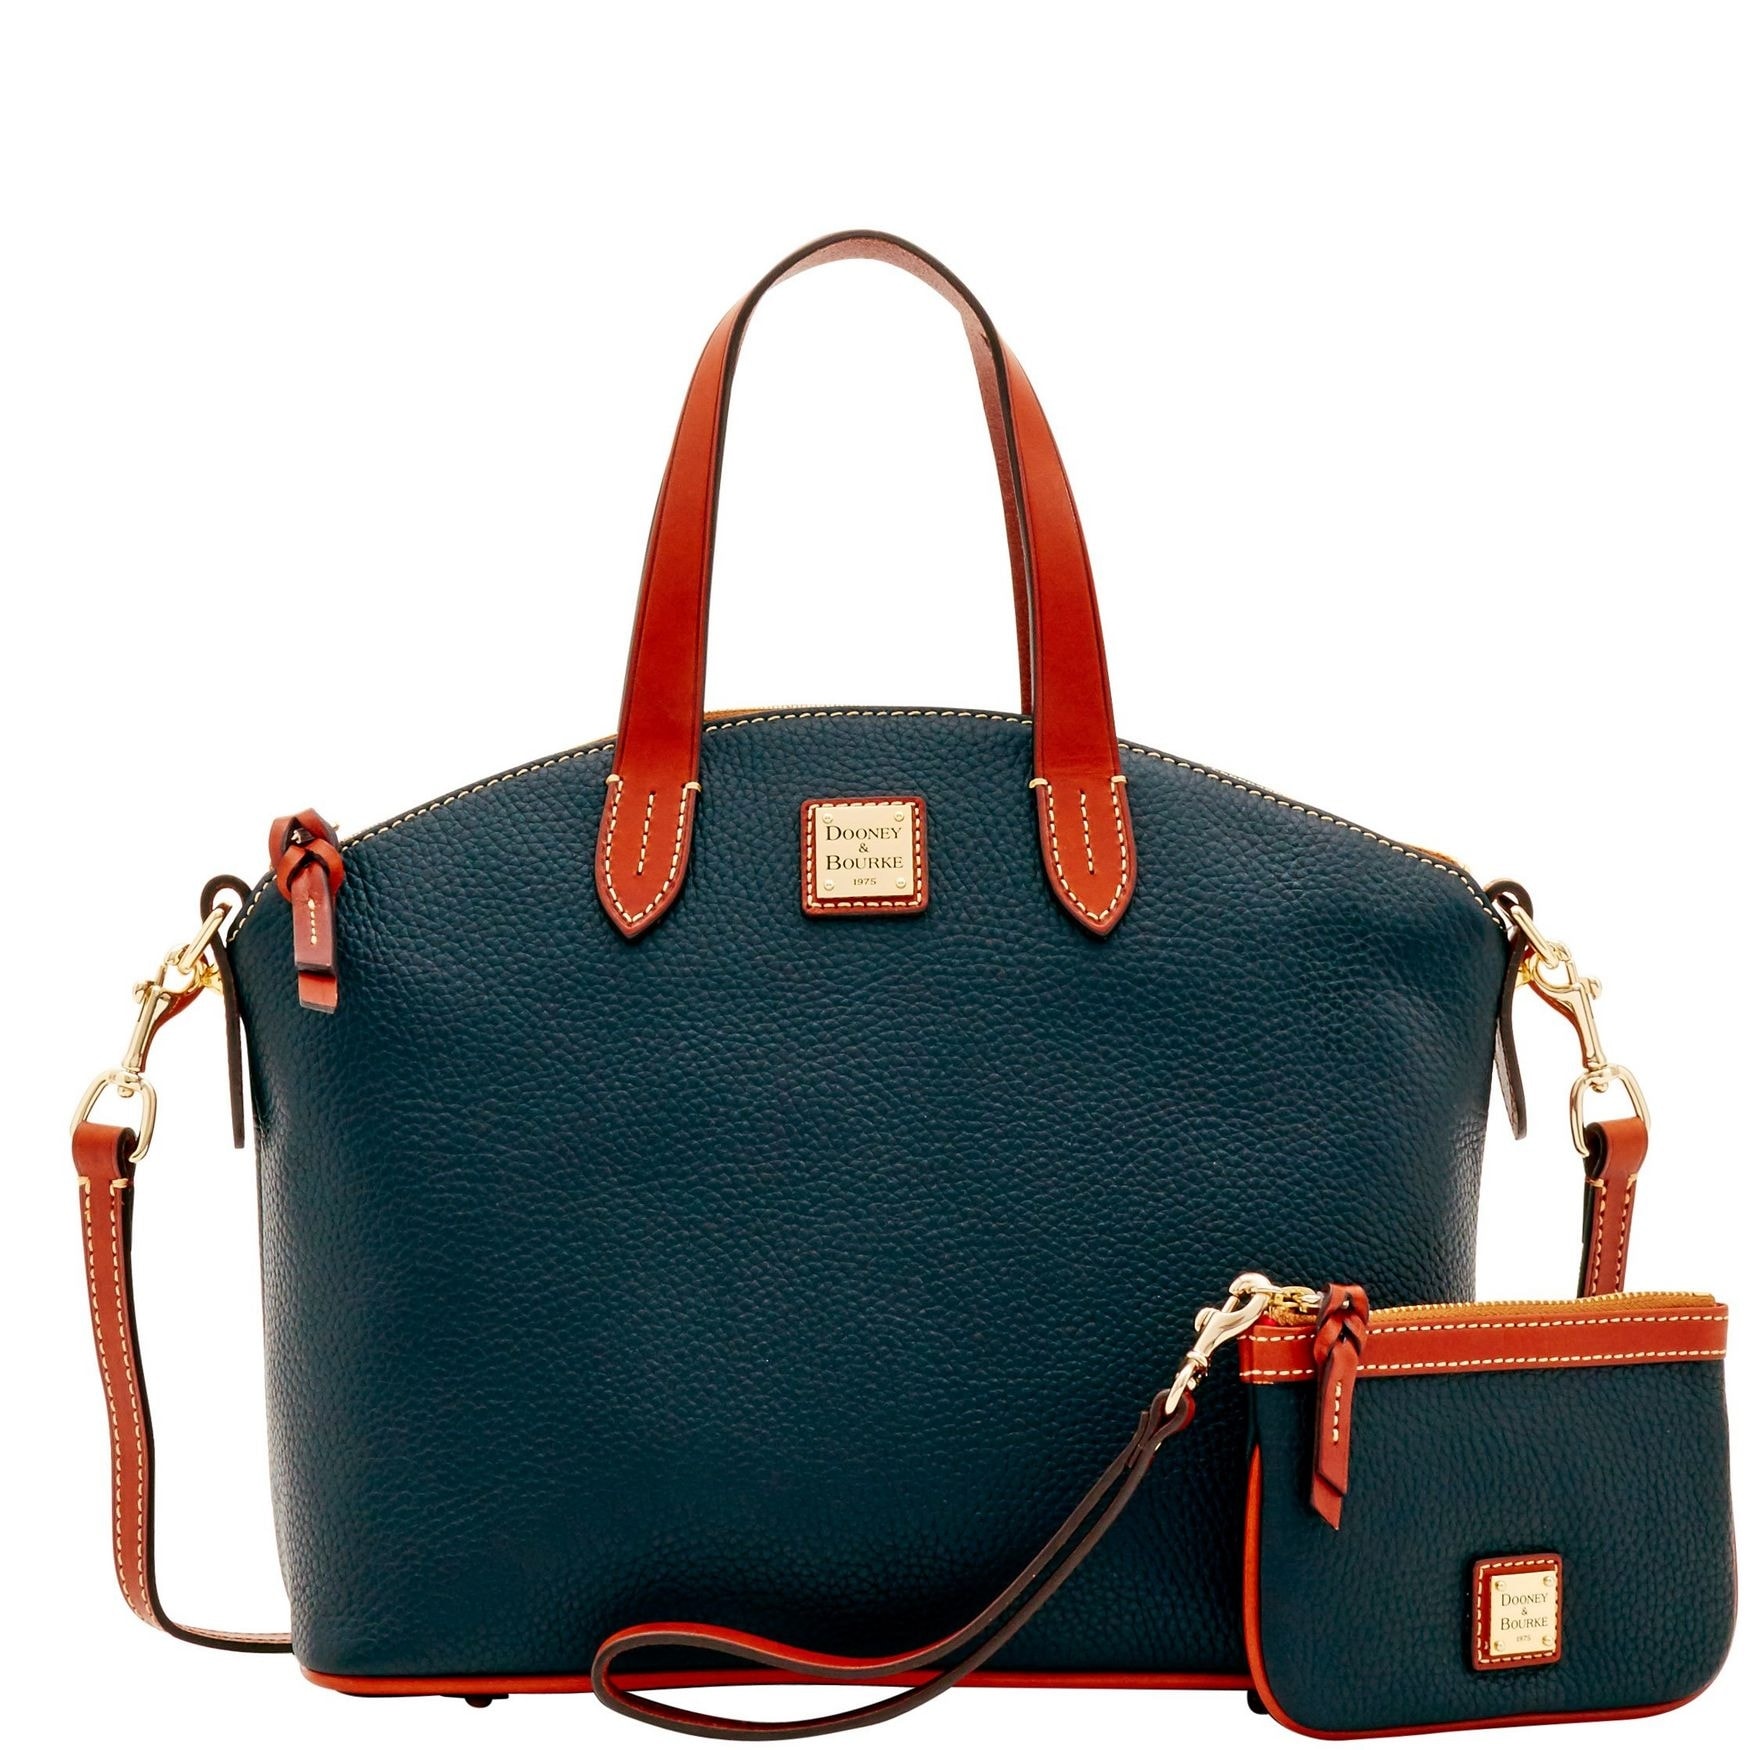 Best High End Handbag Brands Like | semashow.com